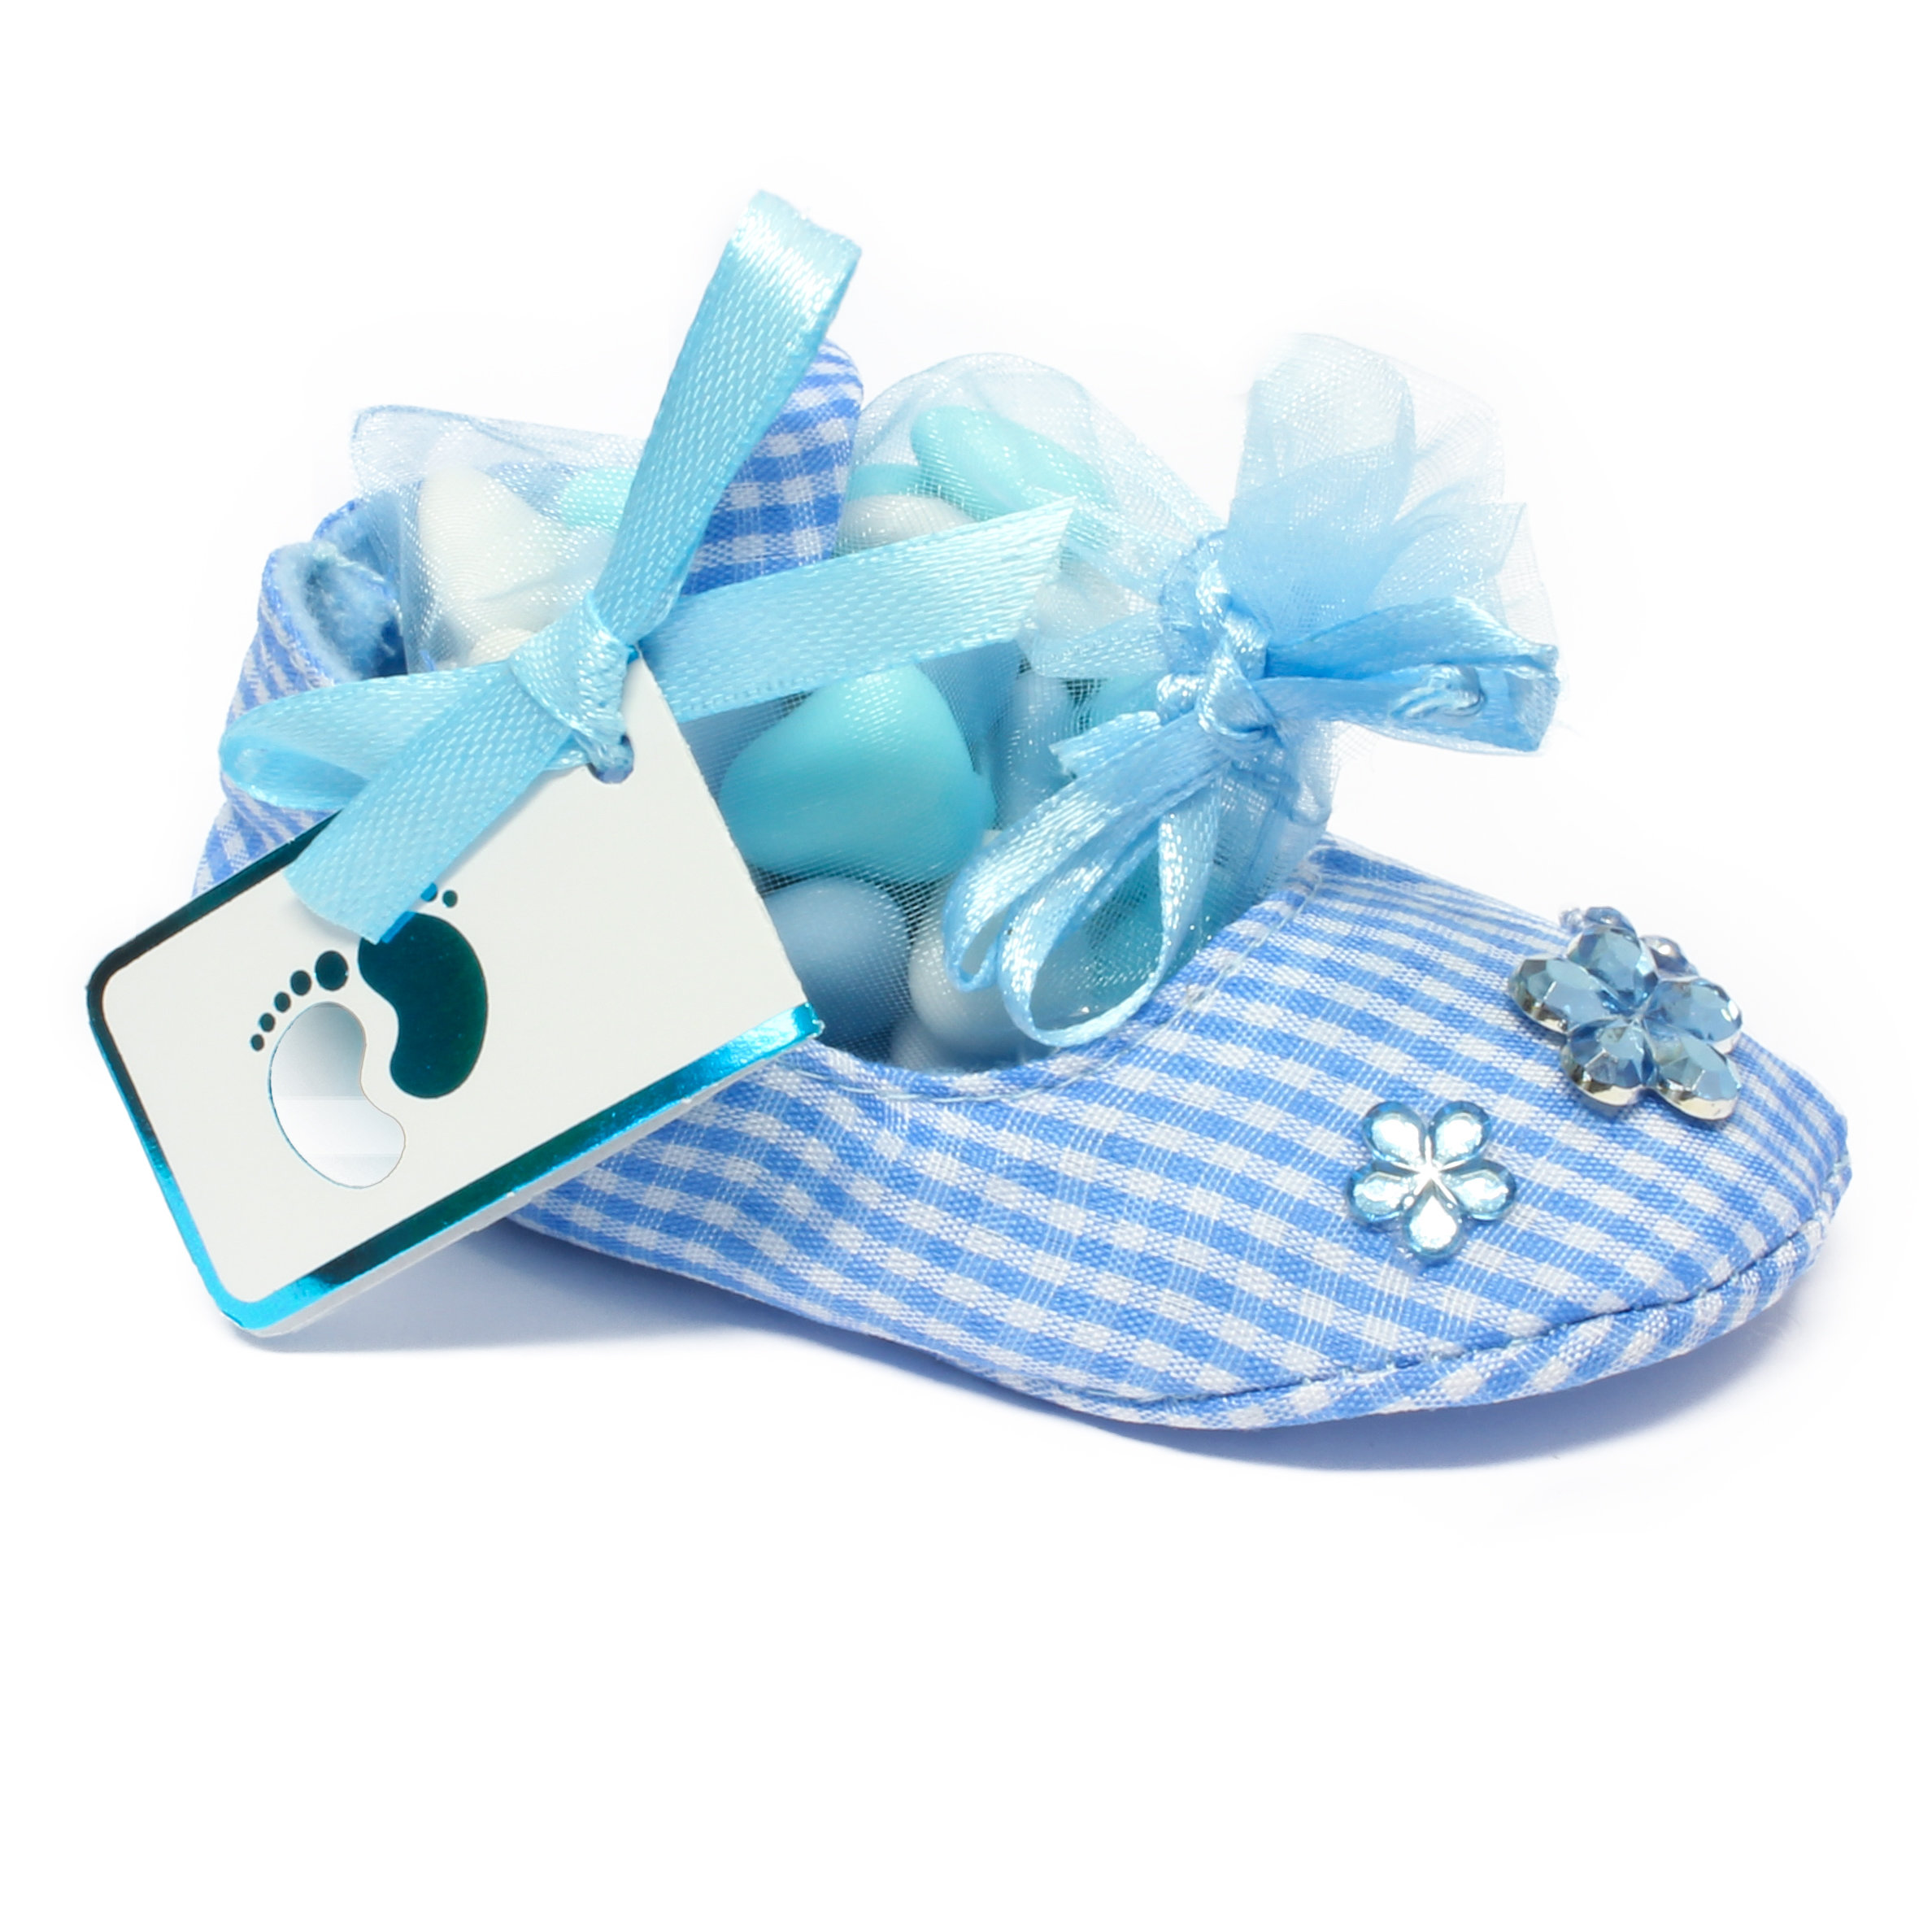 Stoffen Schoentje - Babybedankje - Lichtblauw - Met snoepzakje en kaartje